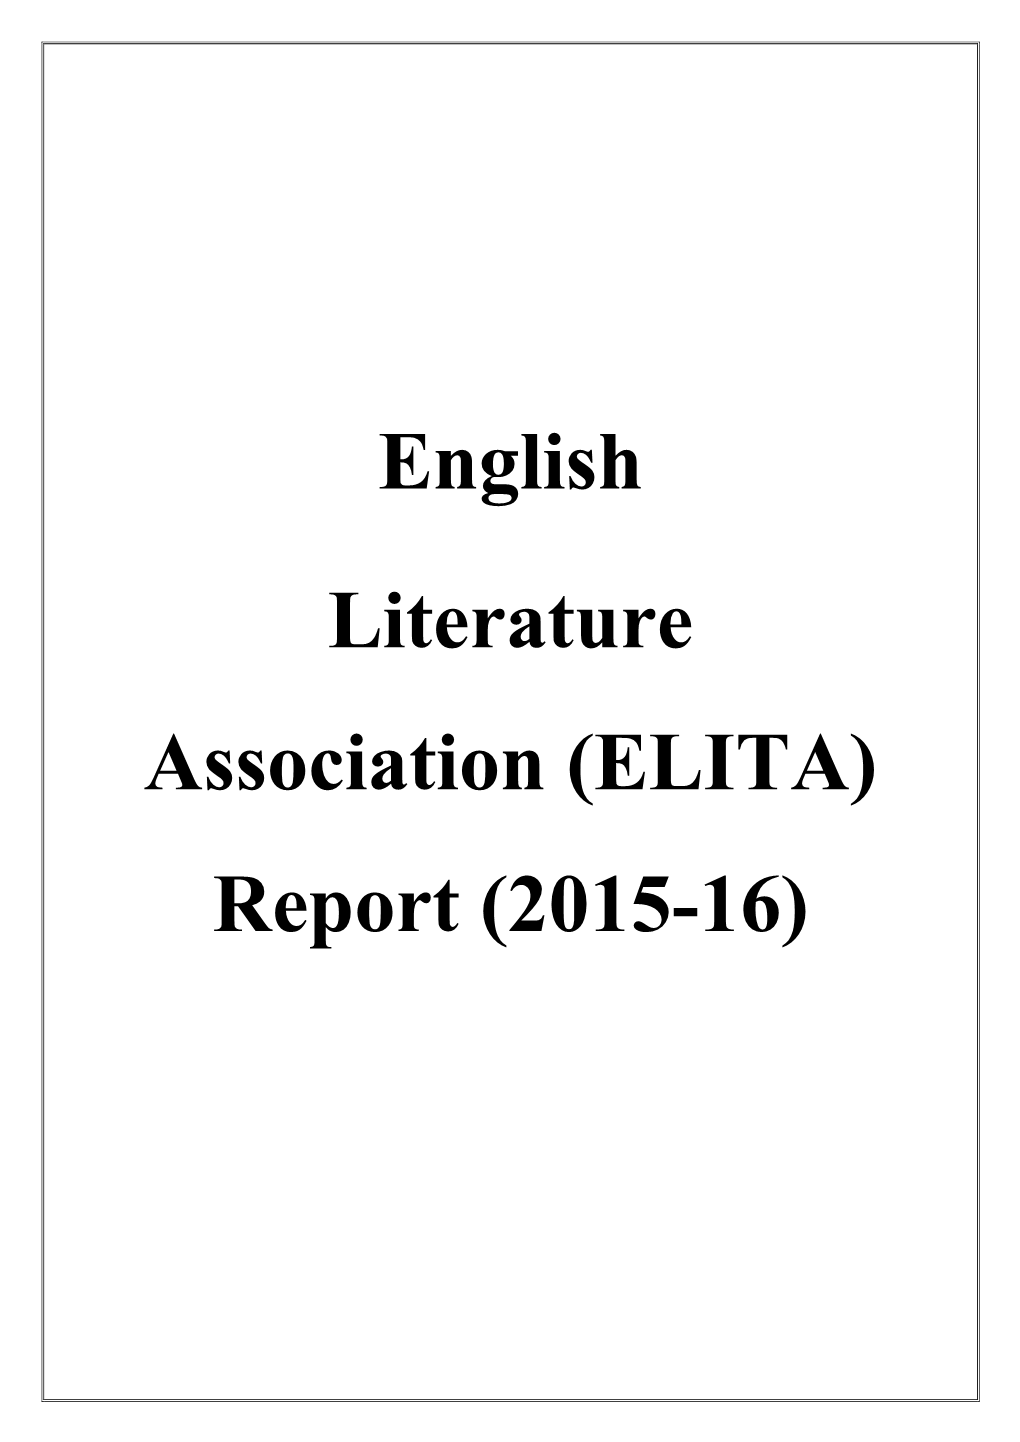 ELITA) Report (2015-16)